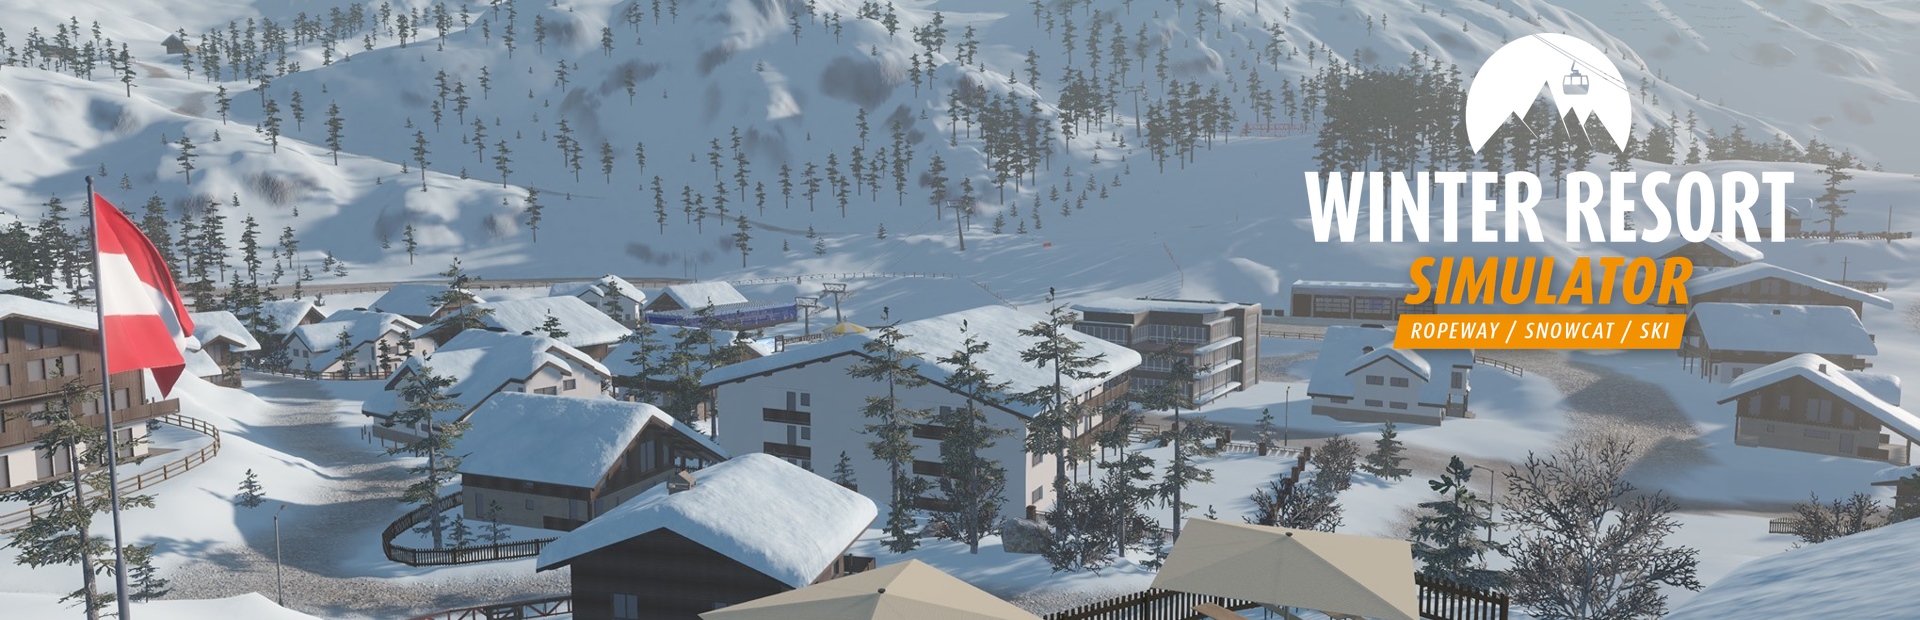 دانلود بازی Winter Resort Simulator برای PC | گیمباتو